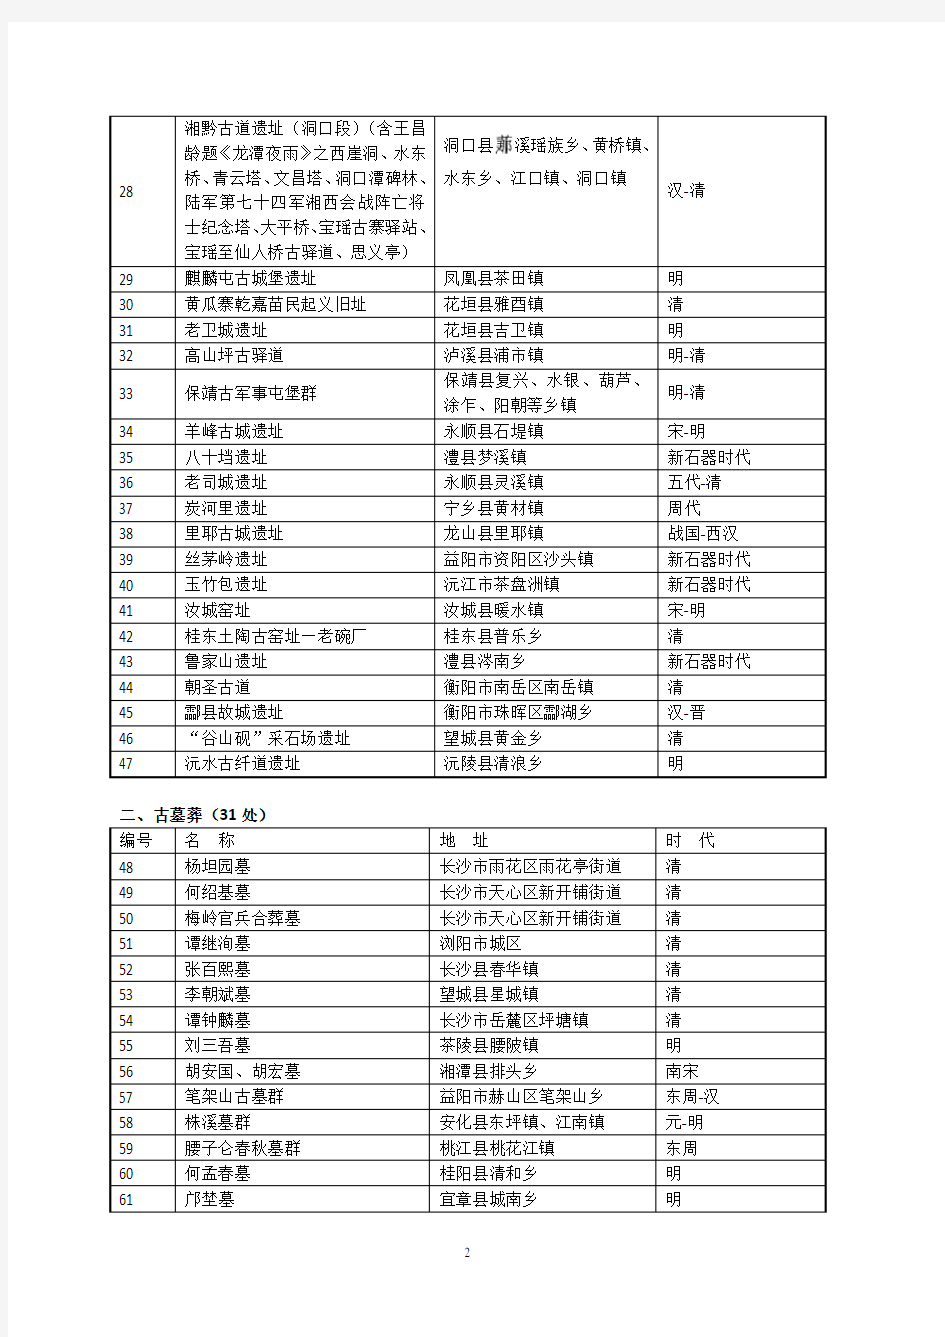 湖南省第9批省级文物保护单位名单